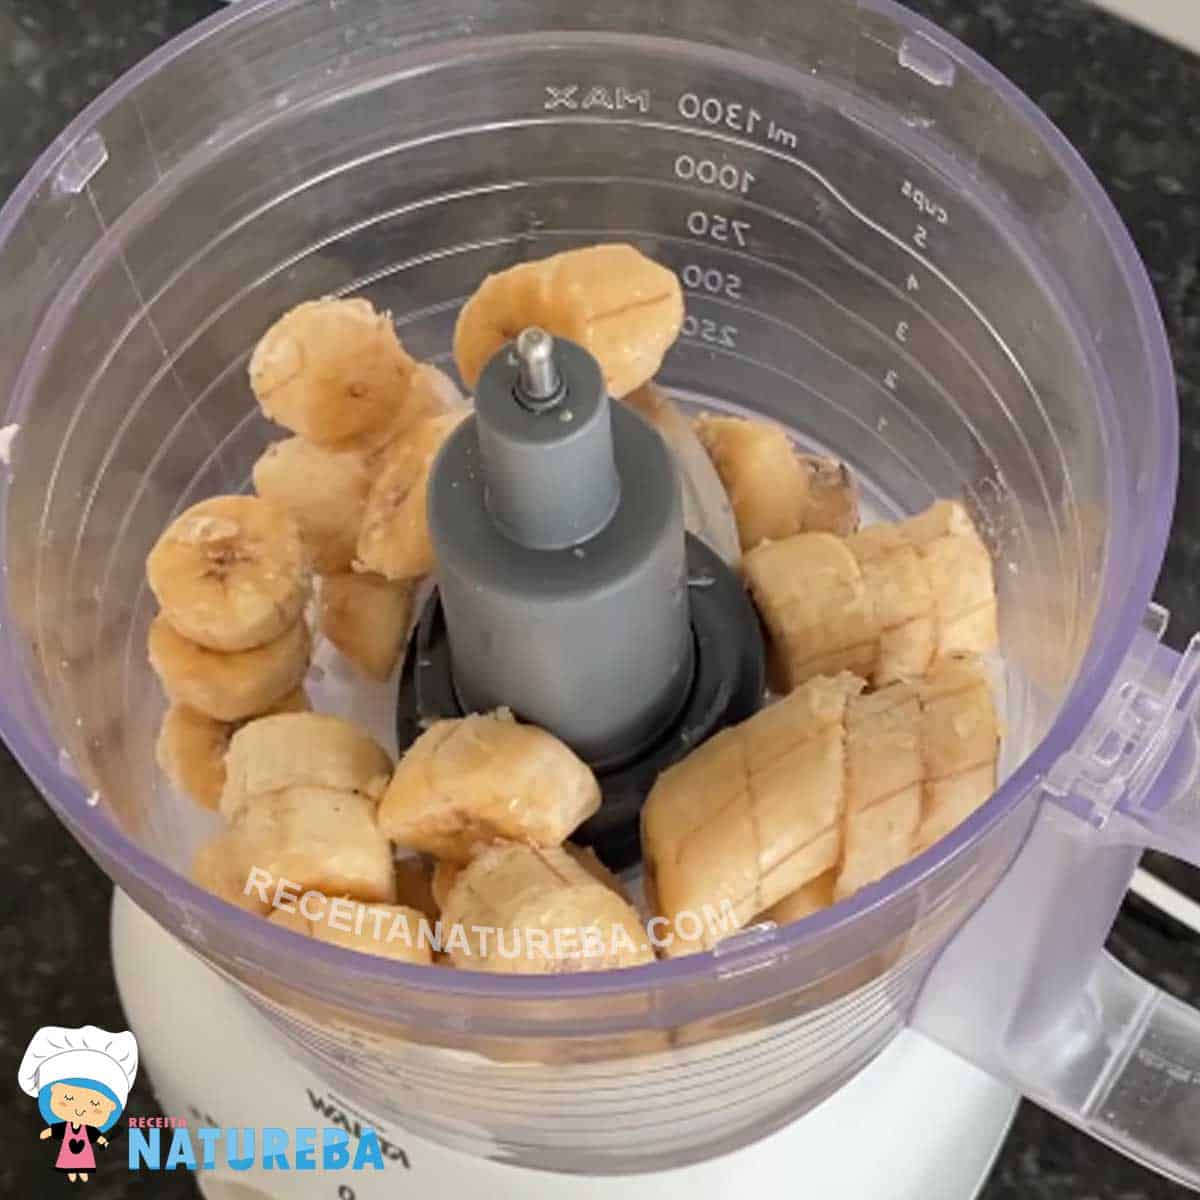 colocando as bananas congeladas no processador de alimentos